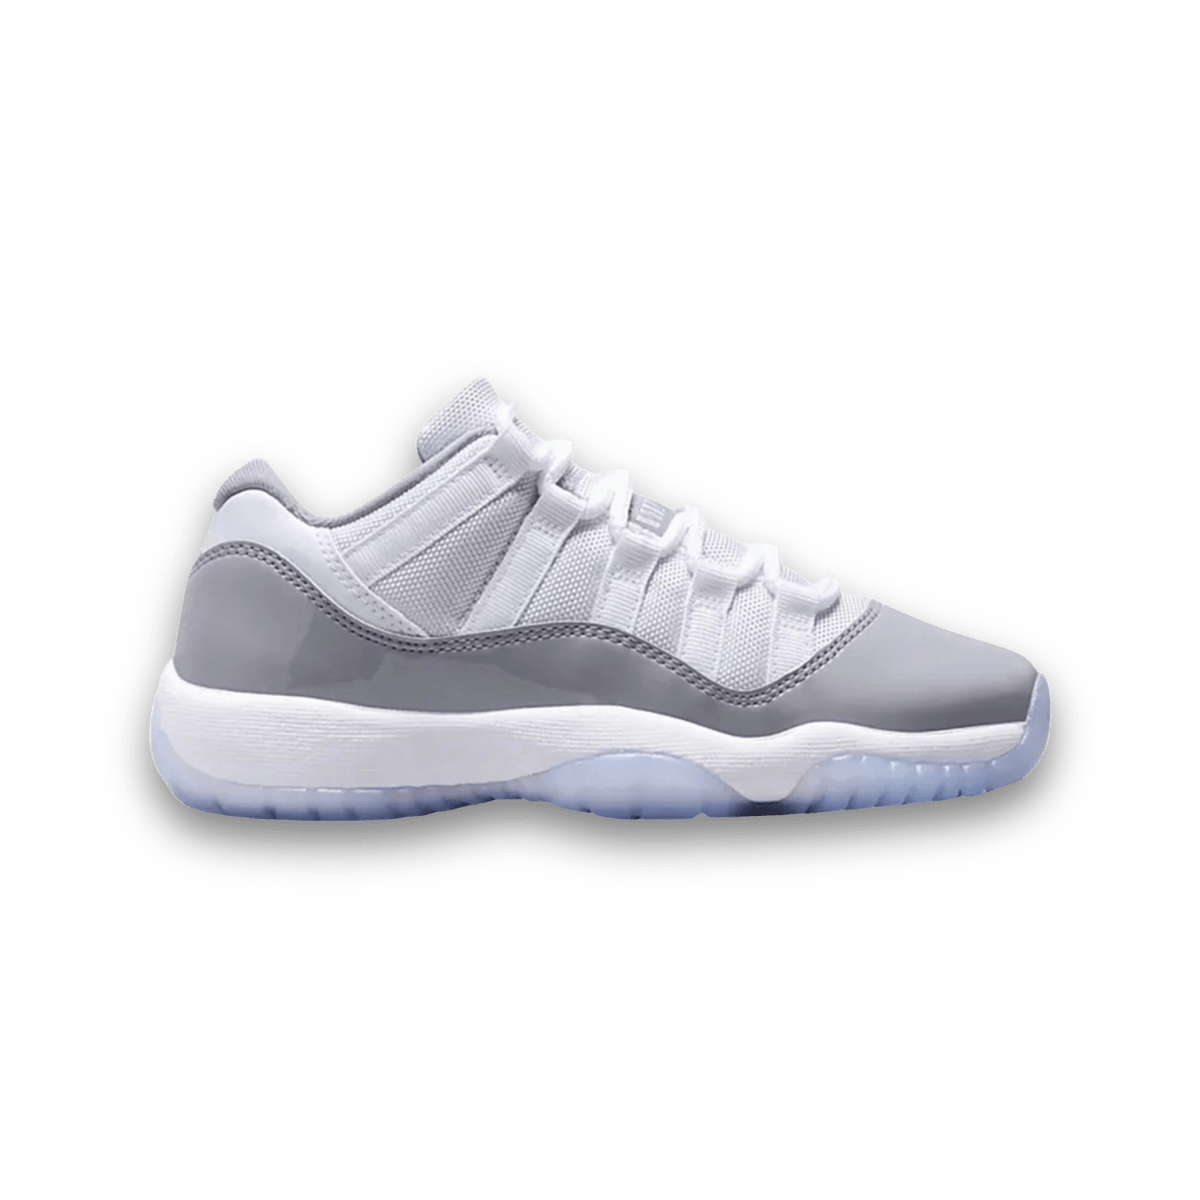 Jordan 11 Retro Low 'Cement Grey' - Grade School - Low Sneaker - Jawns on Fire Sneakers & Streetwear